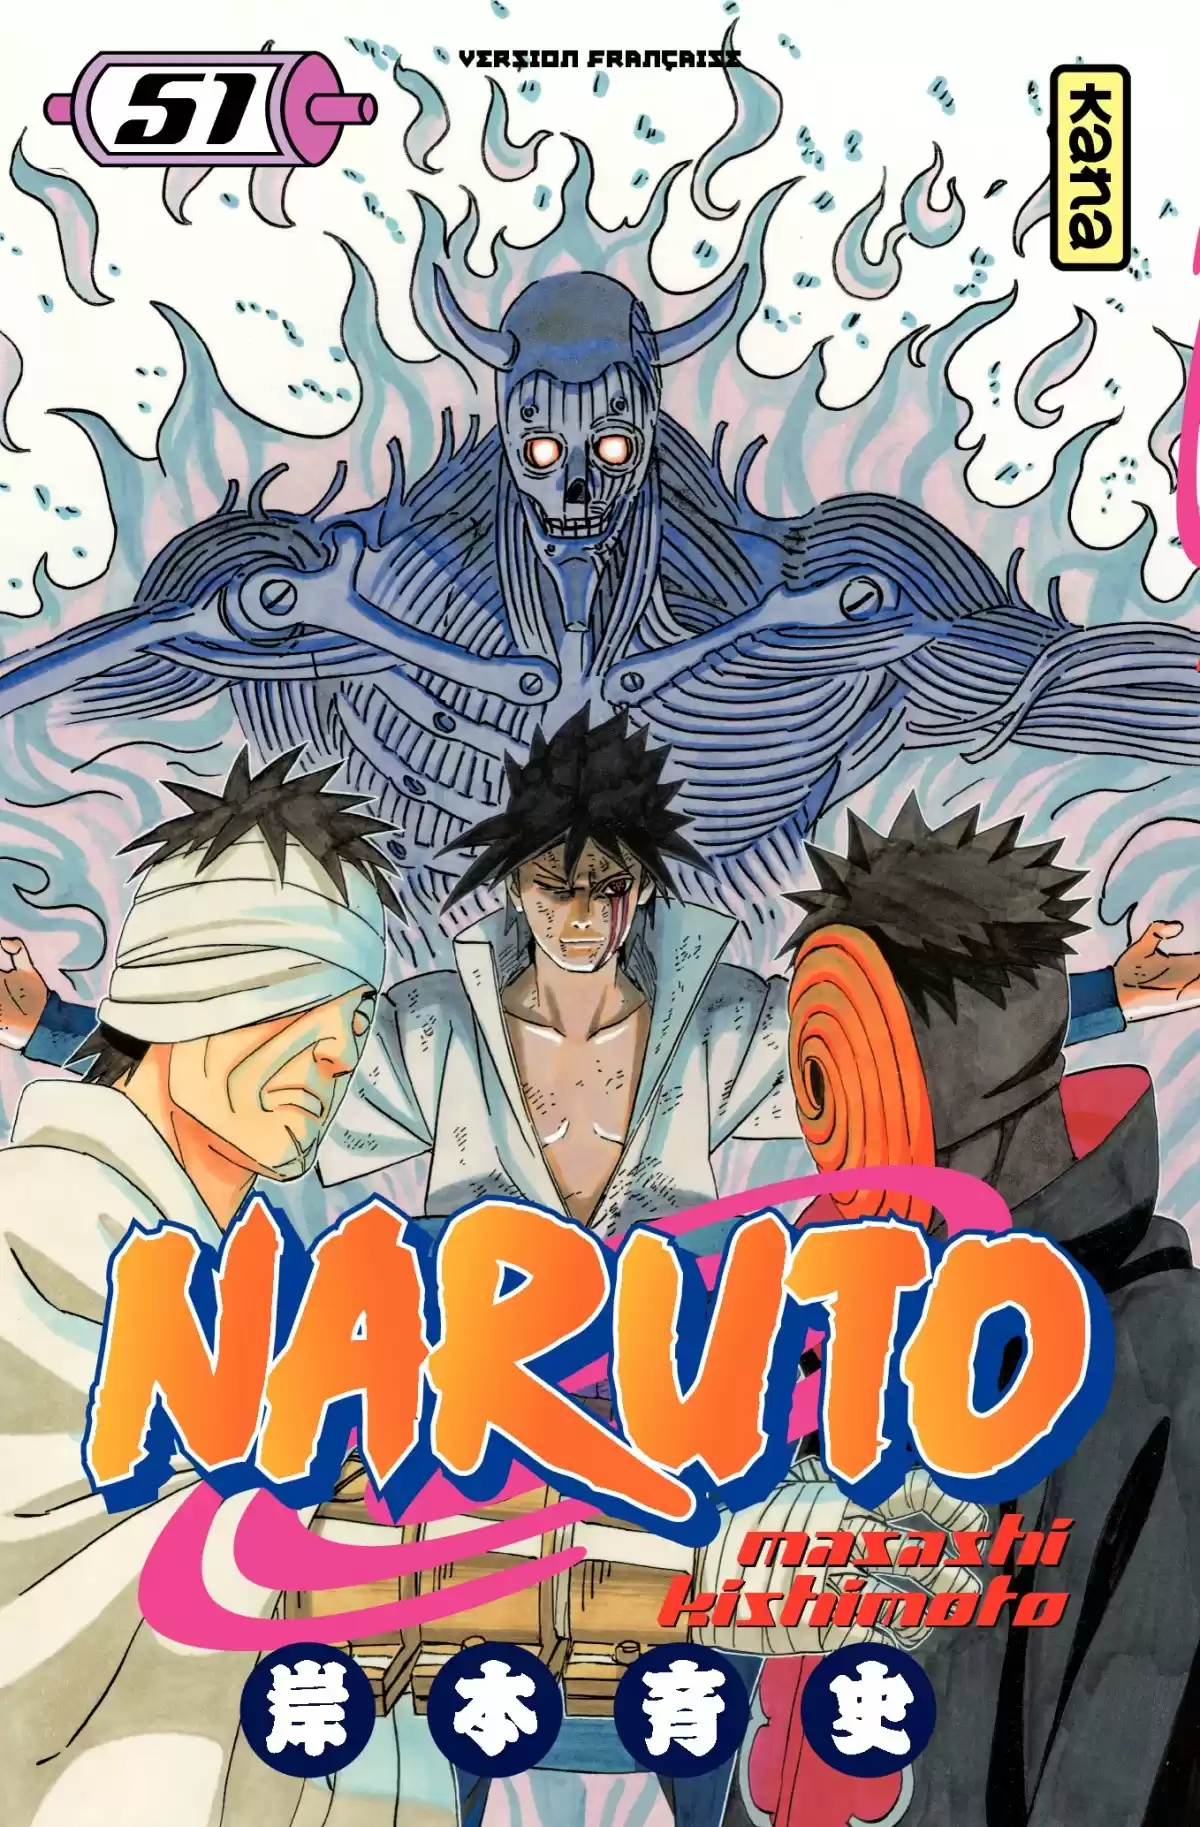 Naruto Volume 51 page 1